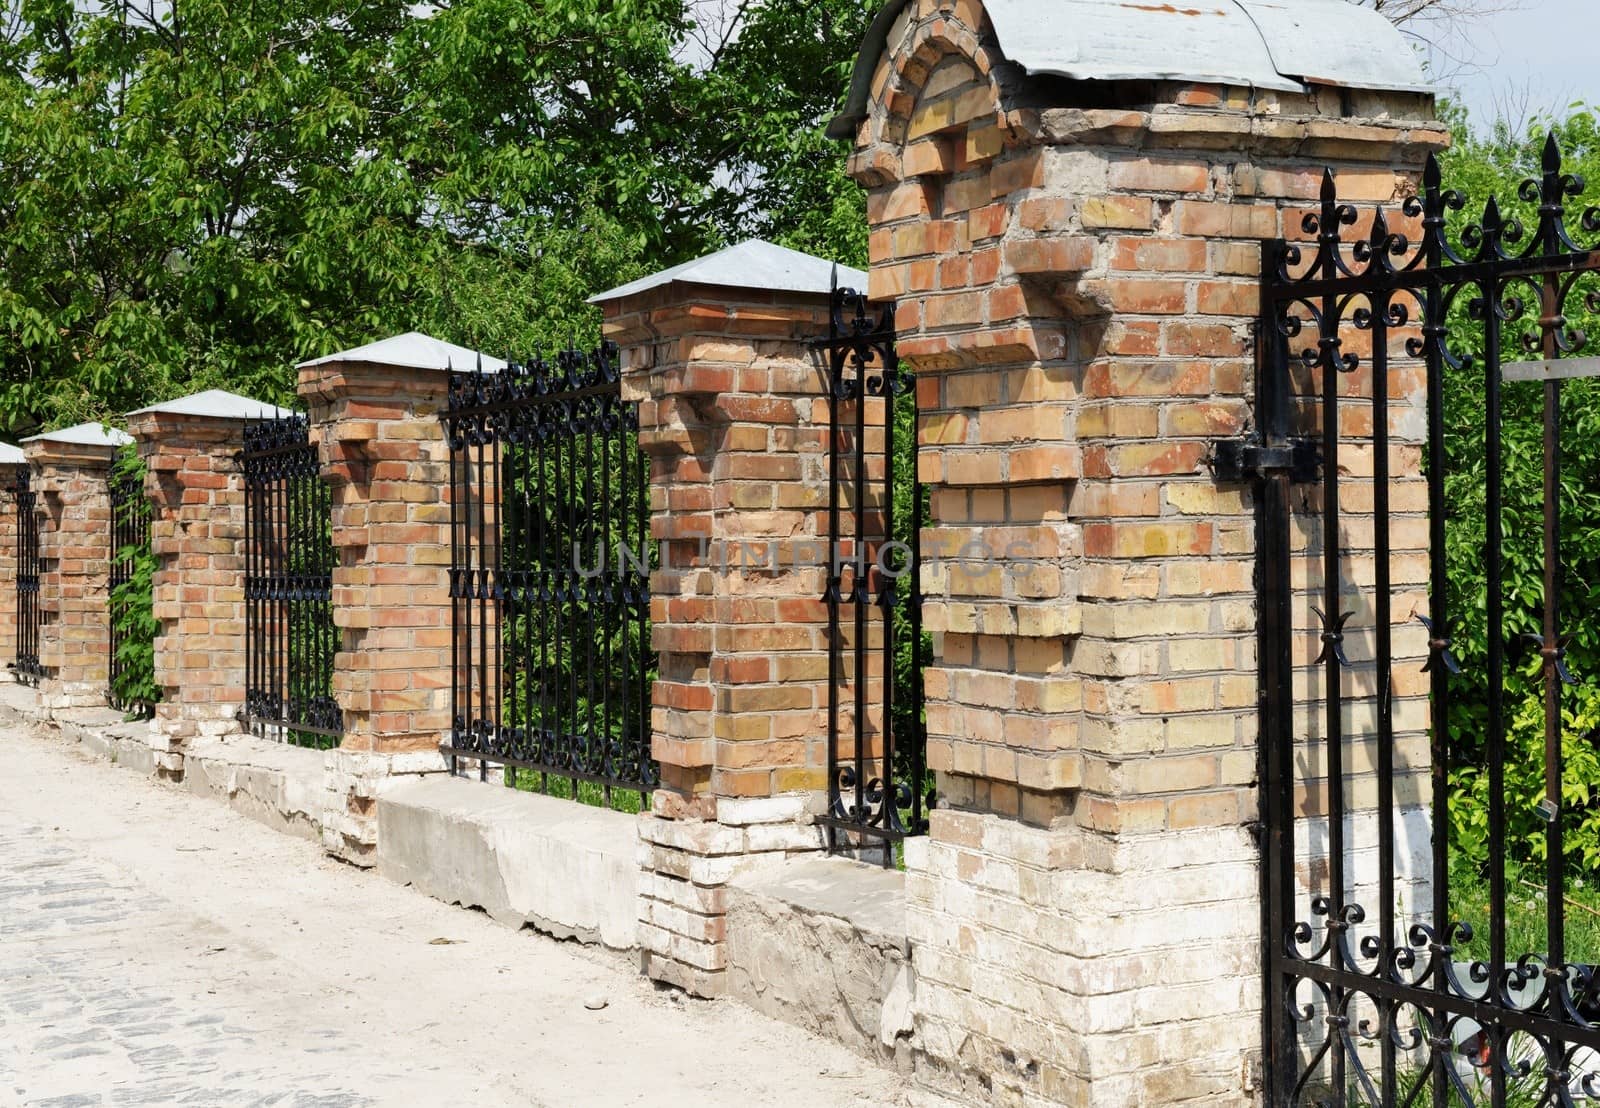 Brick and metal fence in Kiev Pechersk Lavra Monastery in Kiev, Ukraine